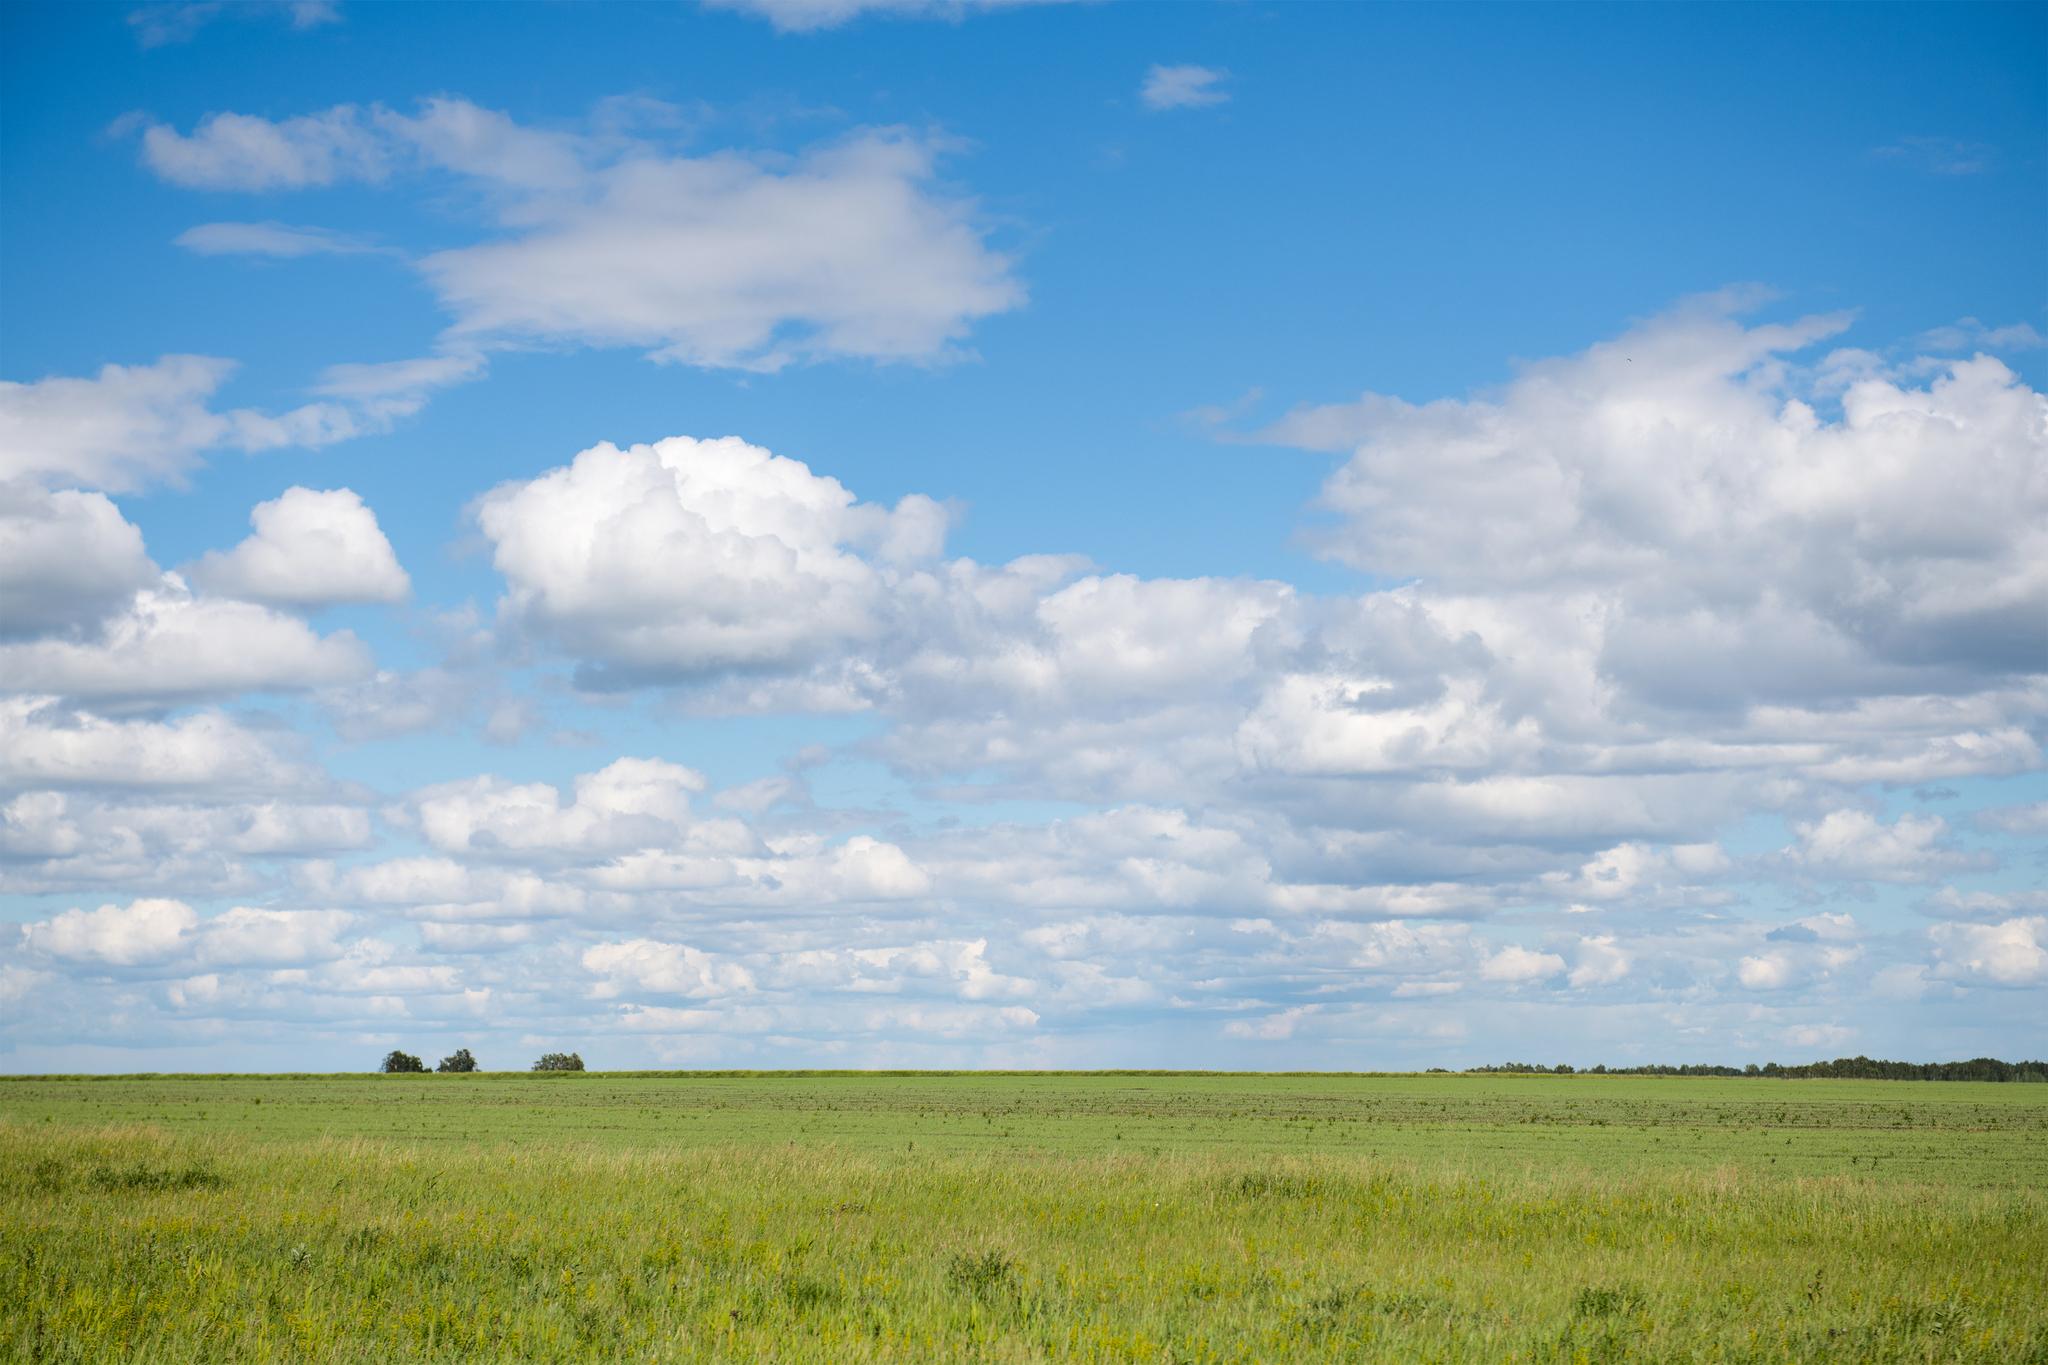 Голубое небо с небольшими облачками — картинка с высоким разрешением  5184×3456 — Abali.ru